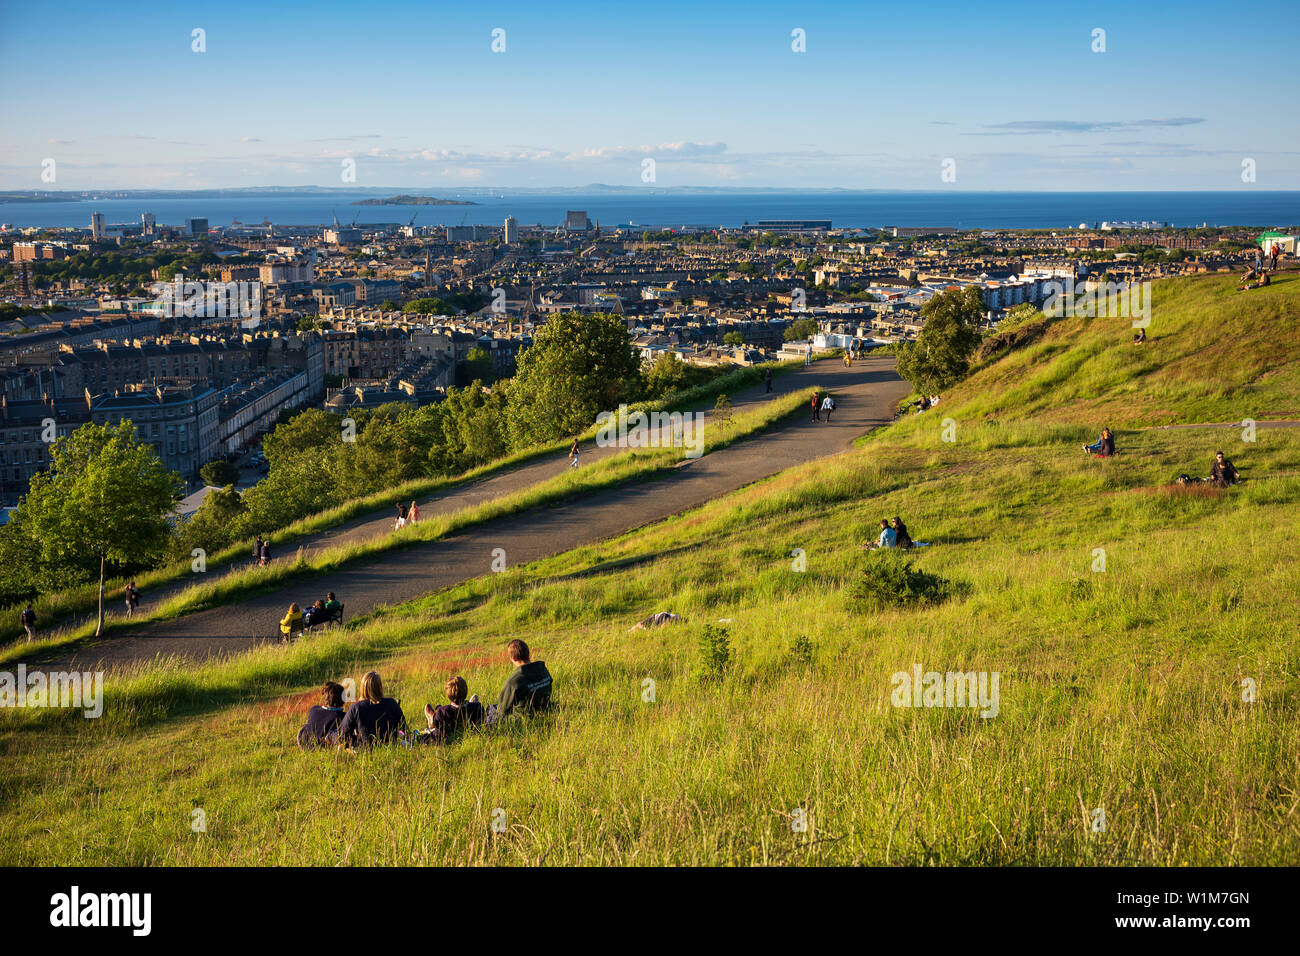 Picknicken beobachten Sie den Sonnenuntergang vom Calton Hill, ein UNESCO-Weltkulturerbe in Edinburgh, Schottland. Stockfoto